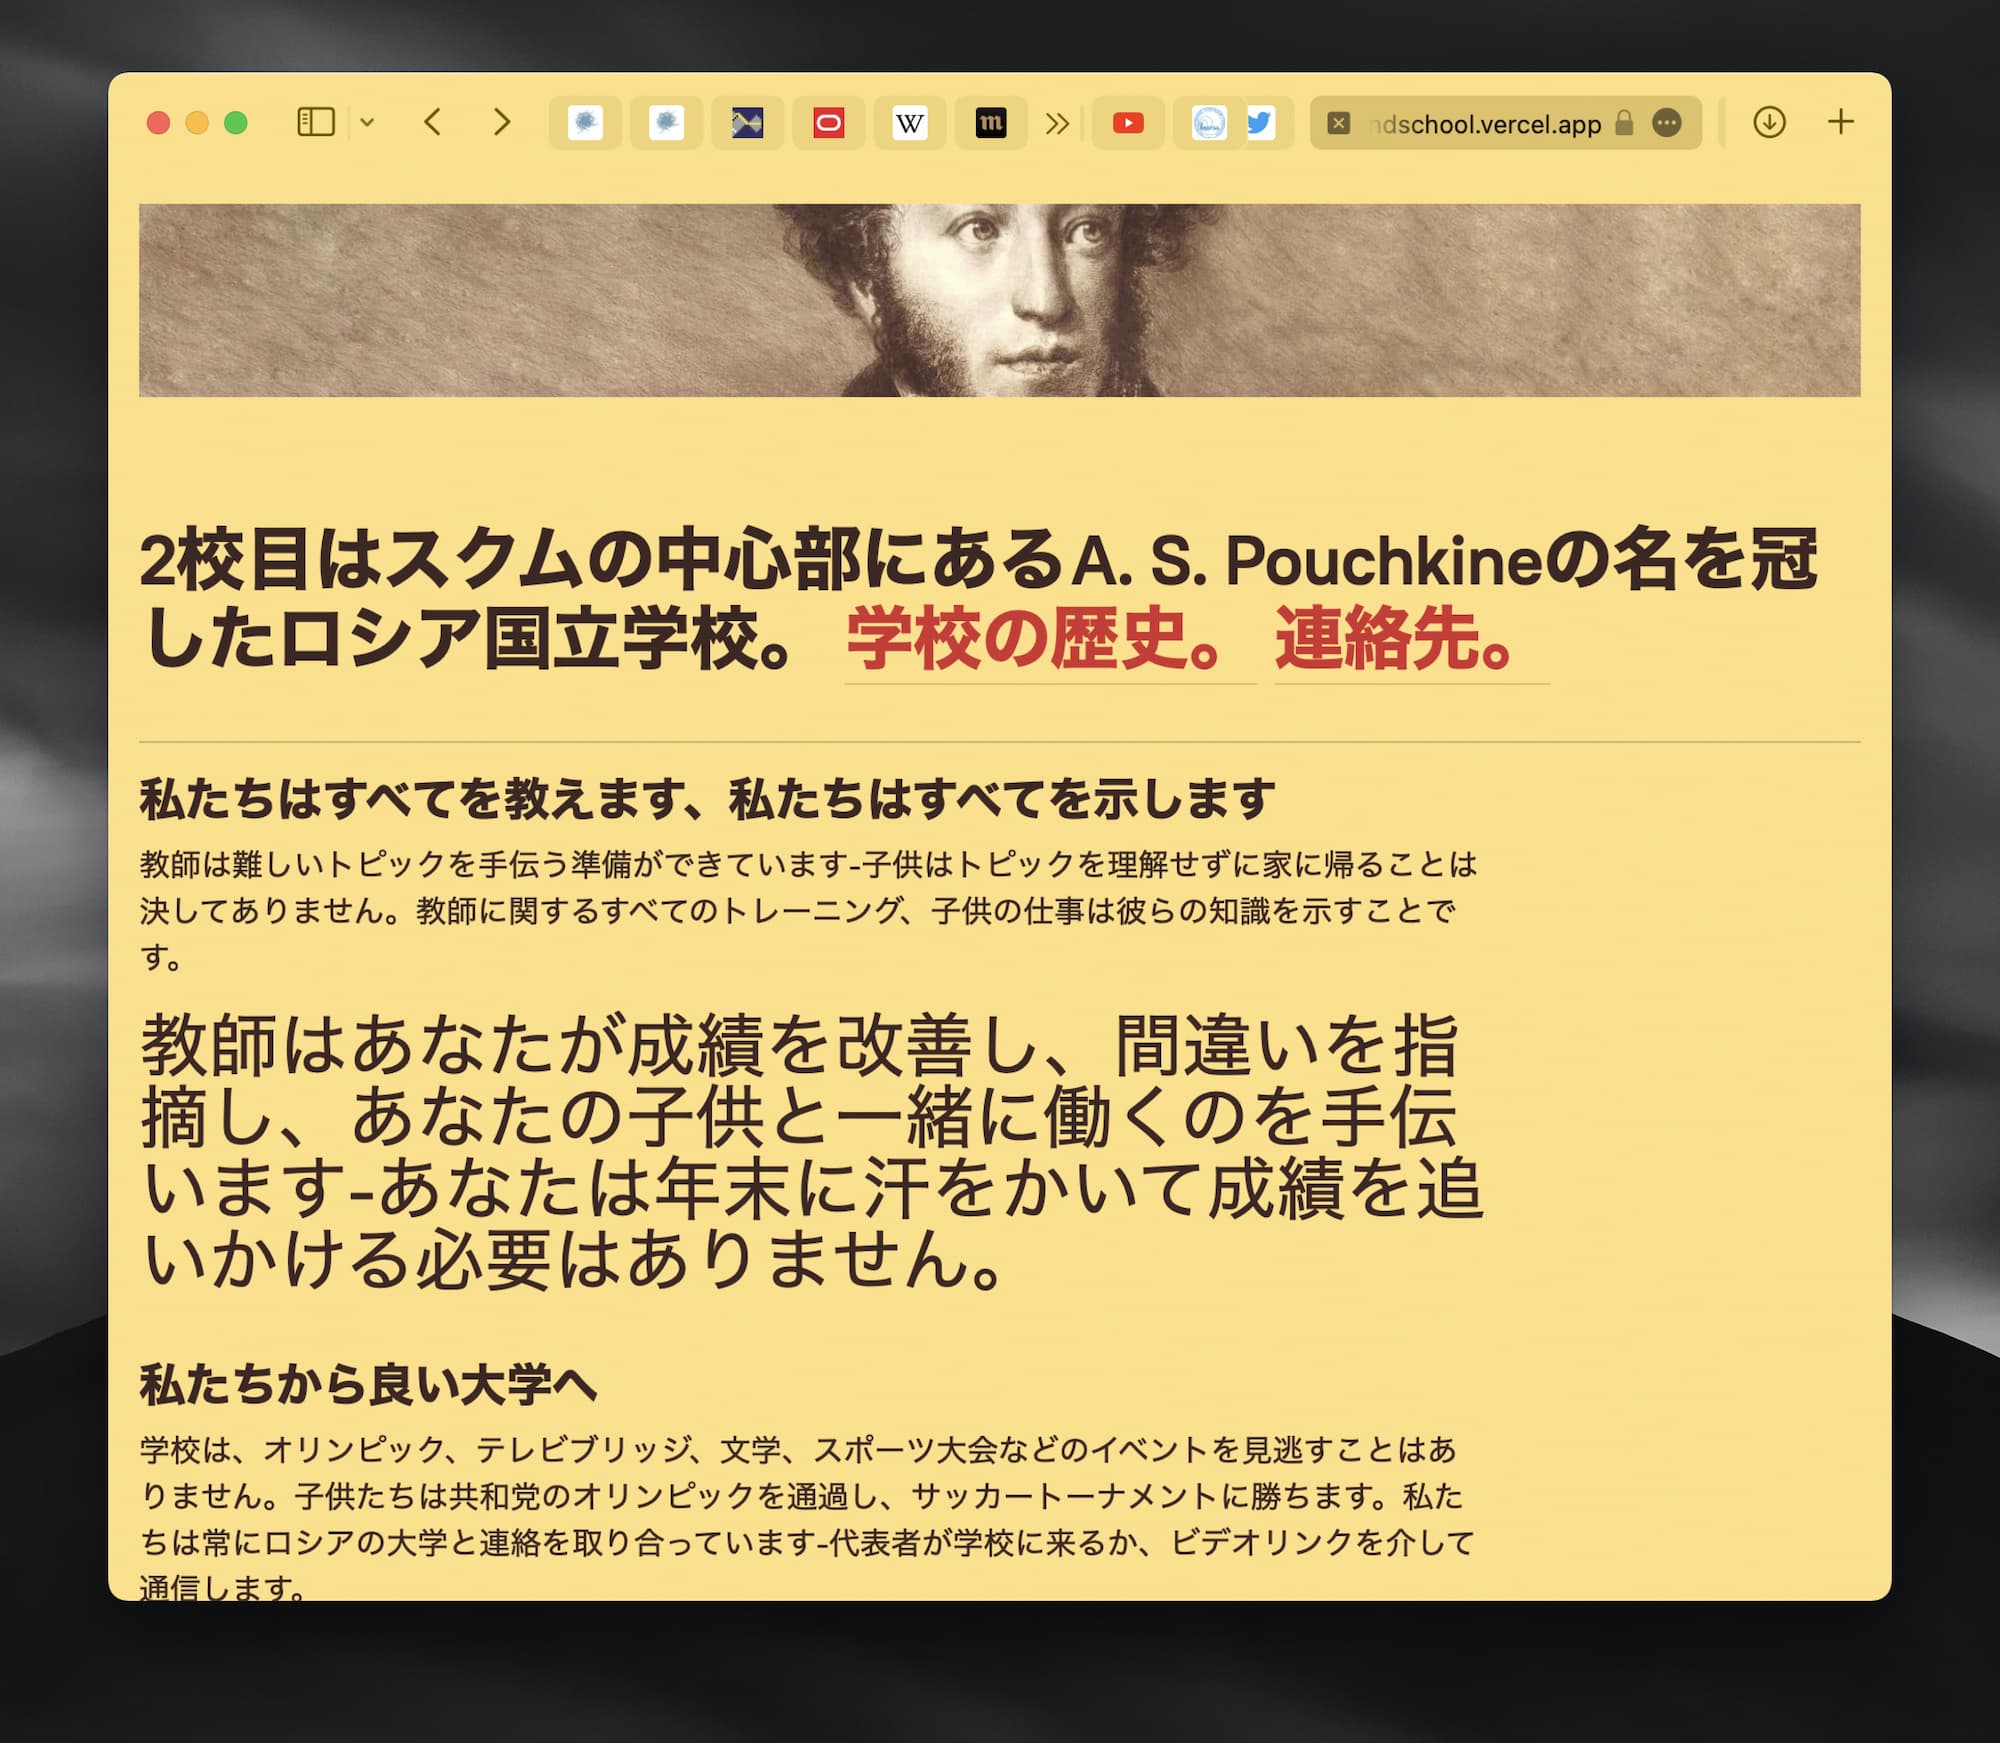 Сайт второй сухумской школы на японском